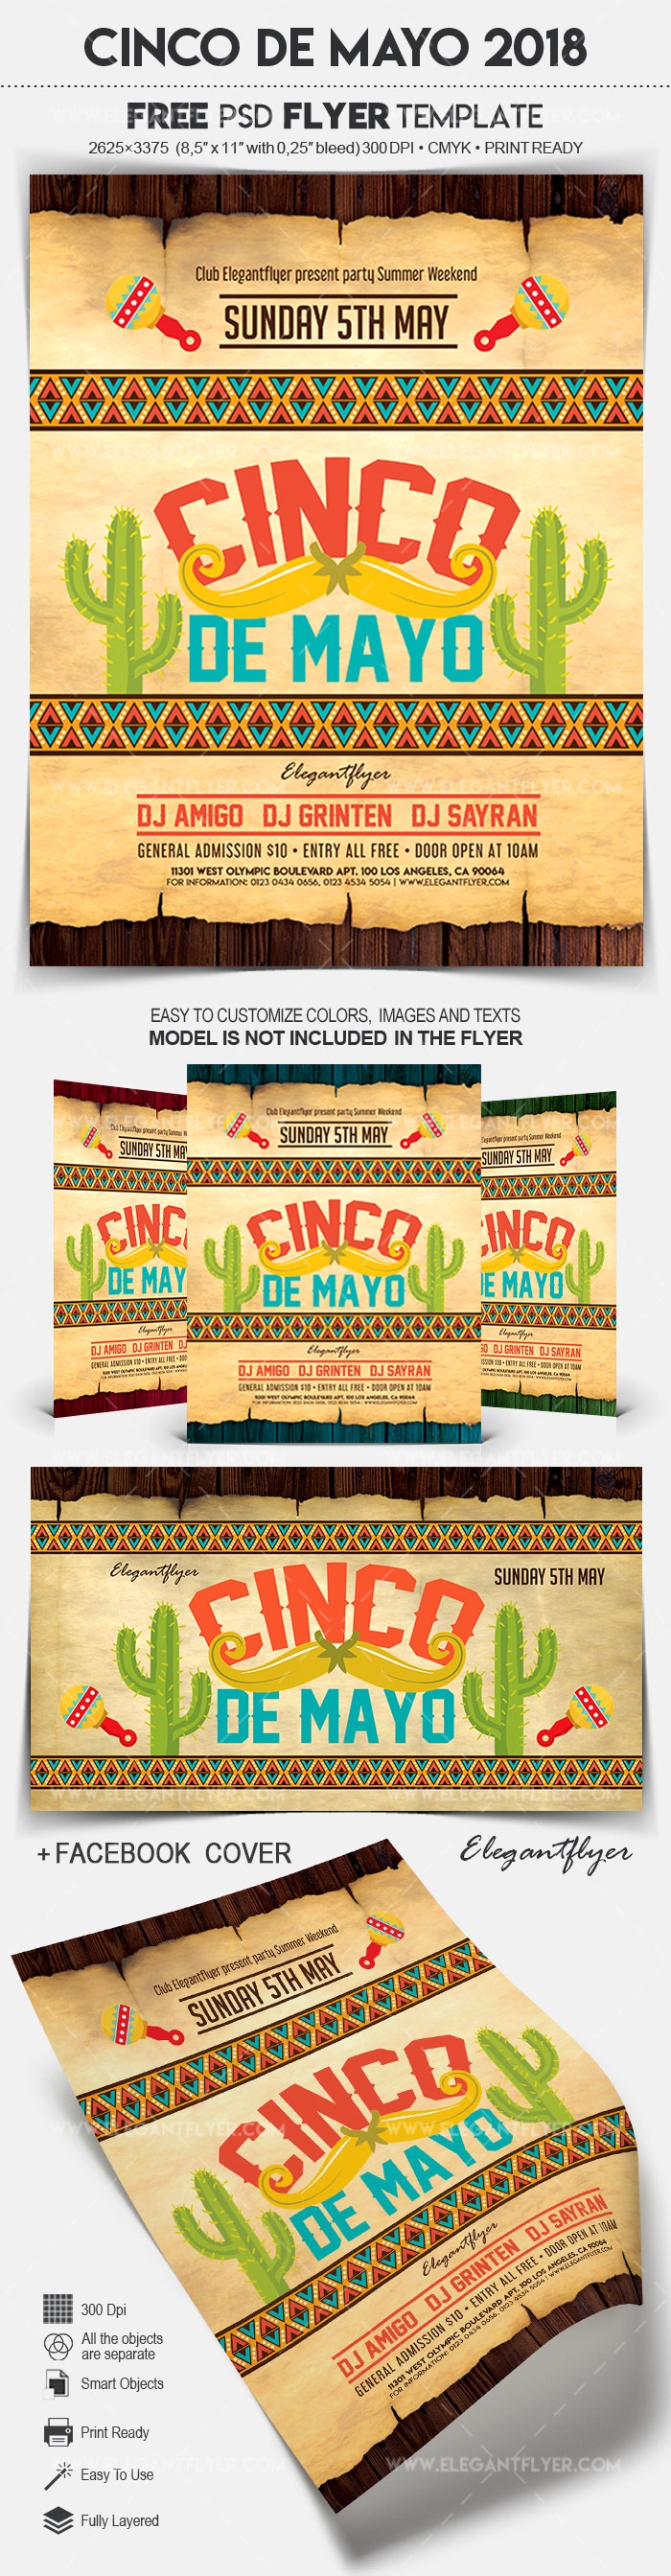 Klassiker illustriertes Cinco de Mayo Event Flyer und Facebook Cover -Vorlage